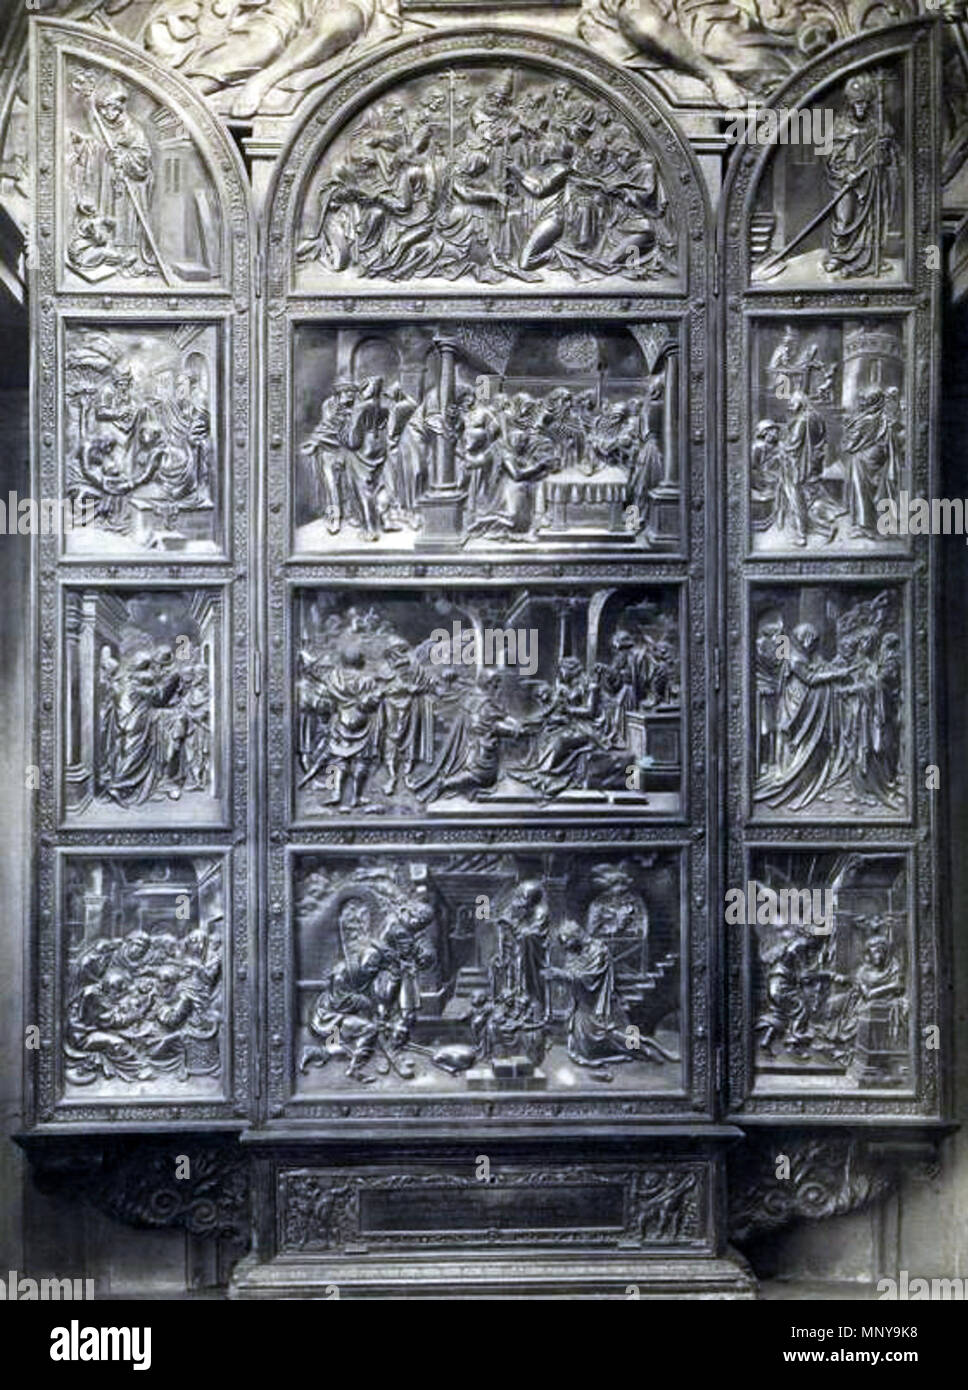 English: Altar in the Sigismund Chapel - opened. Polski: Ołtarz w Kaplicy Zygmuntowskiej - otwarty.   1531-1538.   1253 Wawel Silver altar opened Stock Photo